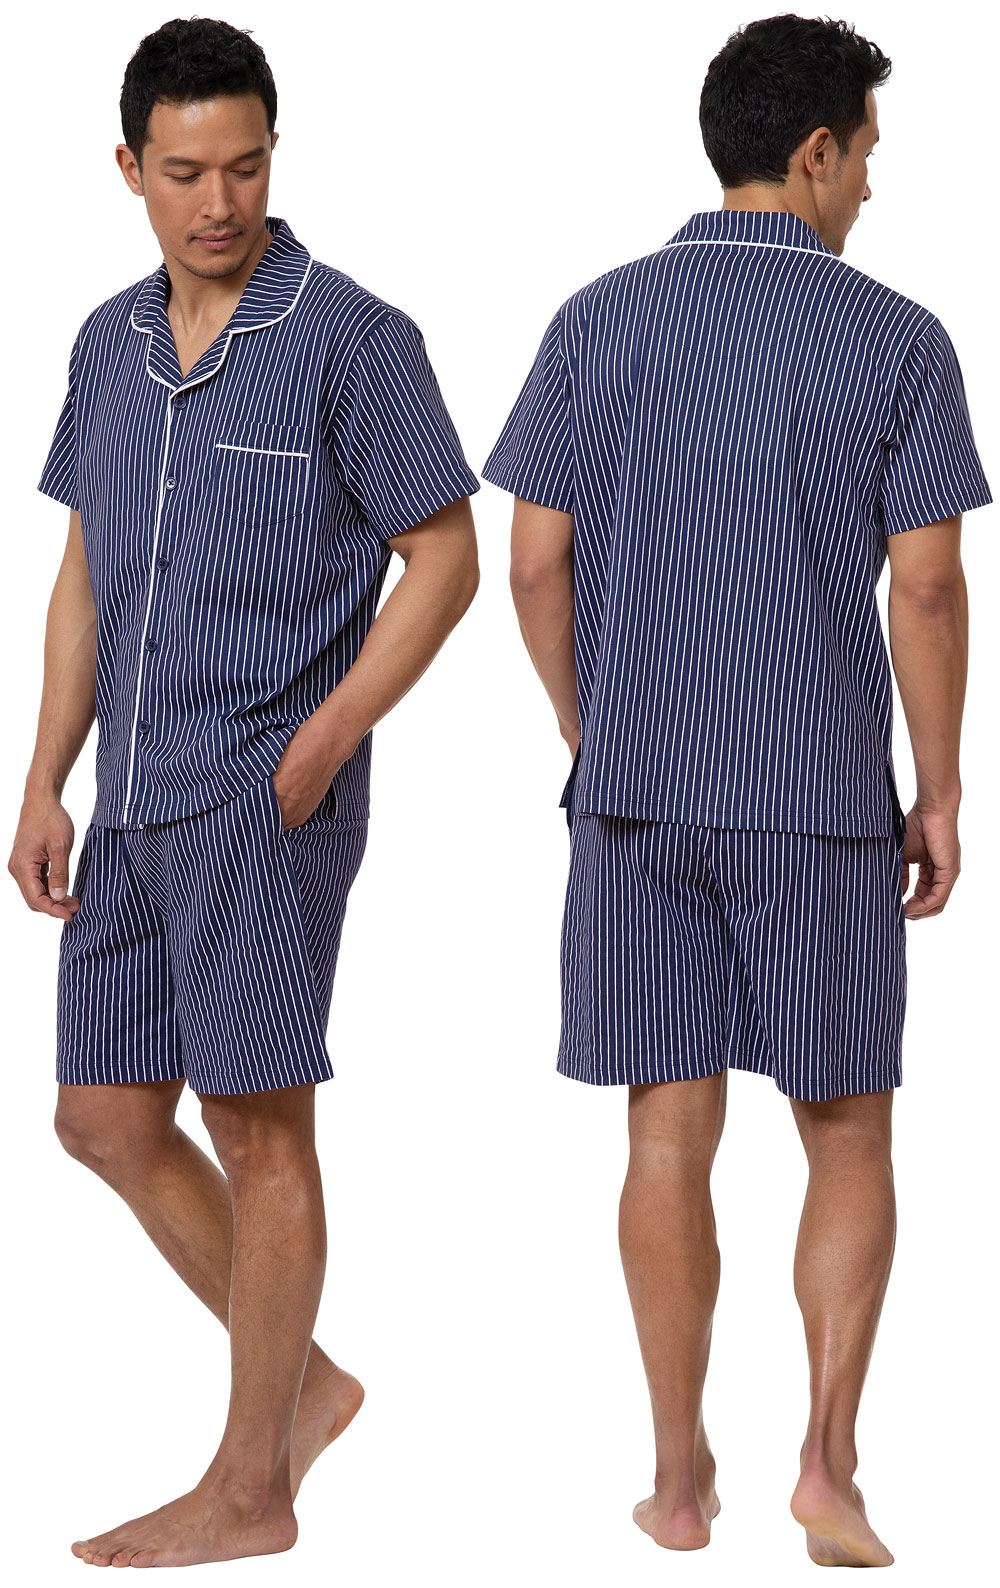 Men's Pajamas, Onesies & Robes | Pajamas for Men | PajamaGram